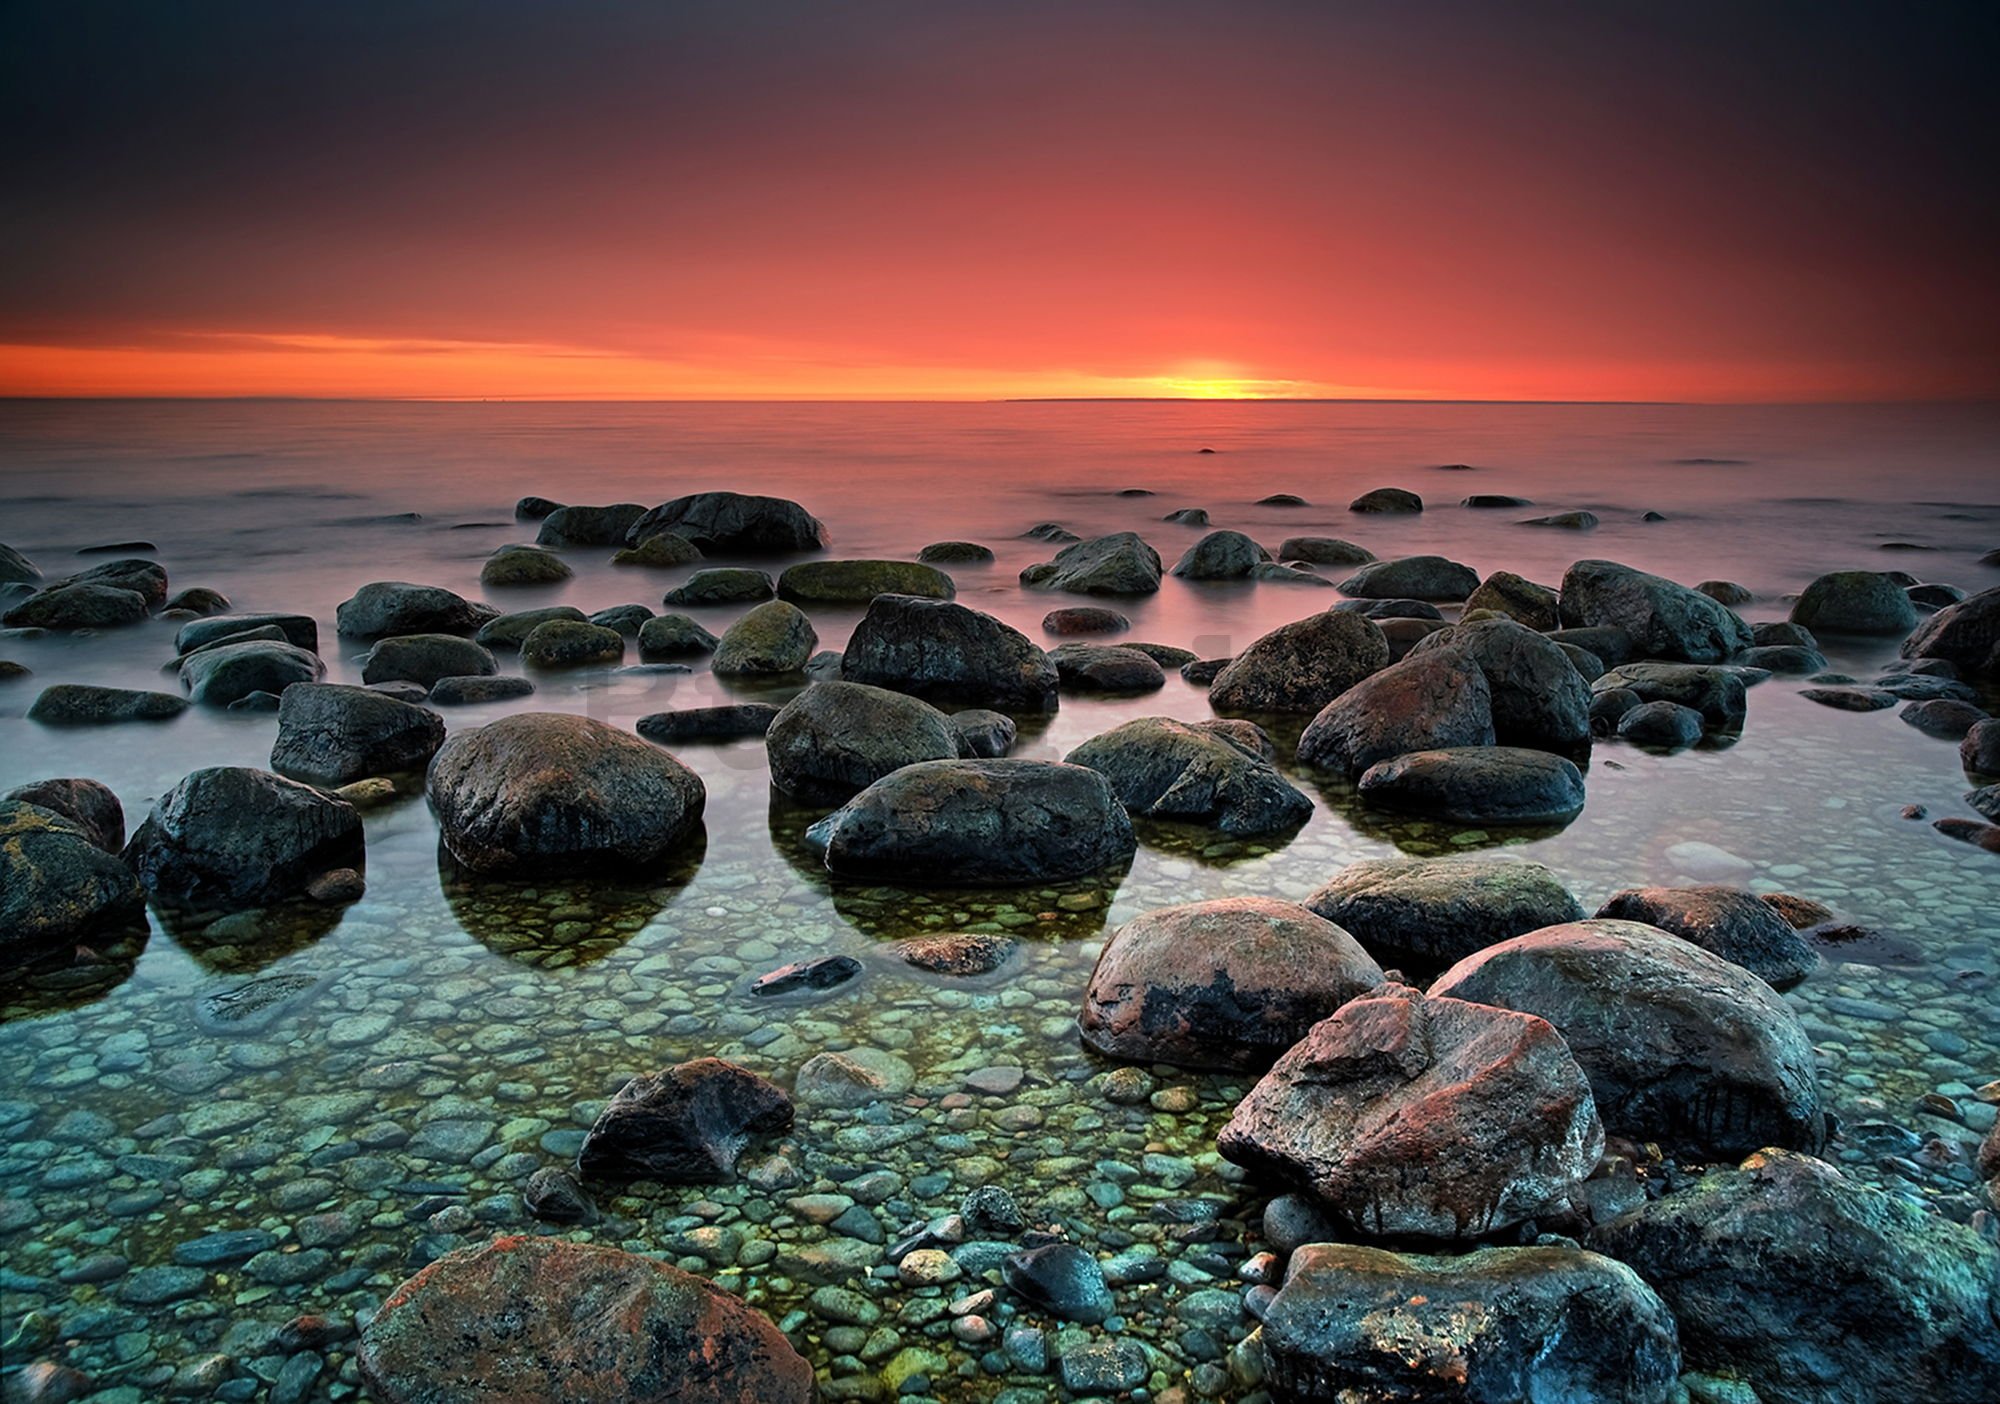 Vlies foto tapeta: Kamenje na plaži (1) - 184x254 cm